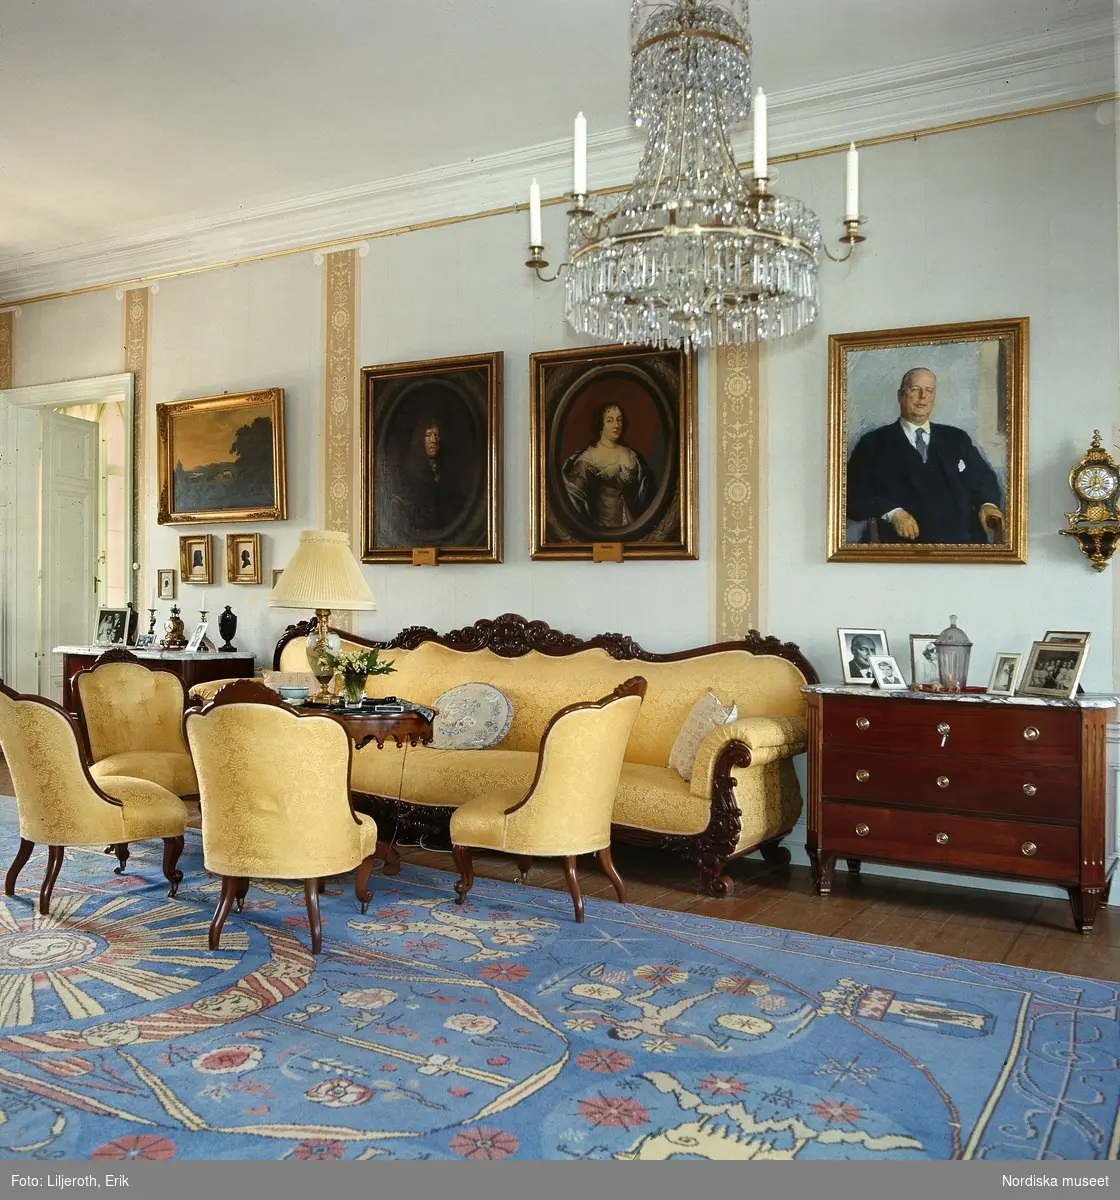 Interiör från Blekhem i Småland. Stora salongen med möbel i nyrokoko, matta vävd efter mönster av Maja Sjöström och Ehrenstrahlporträtt över soffan.